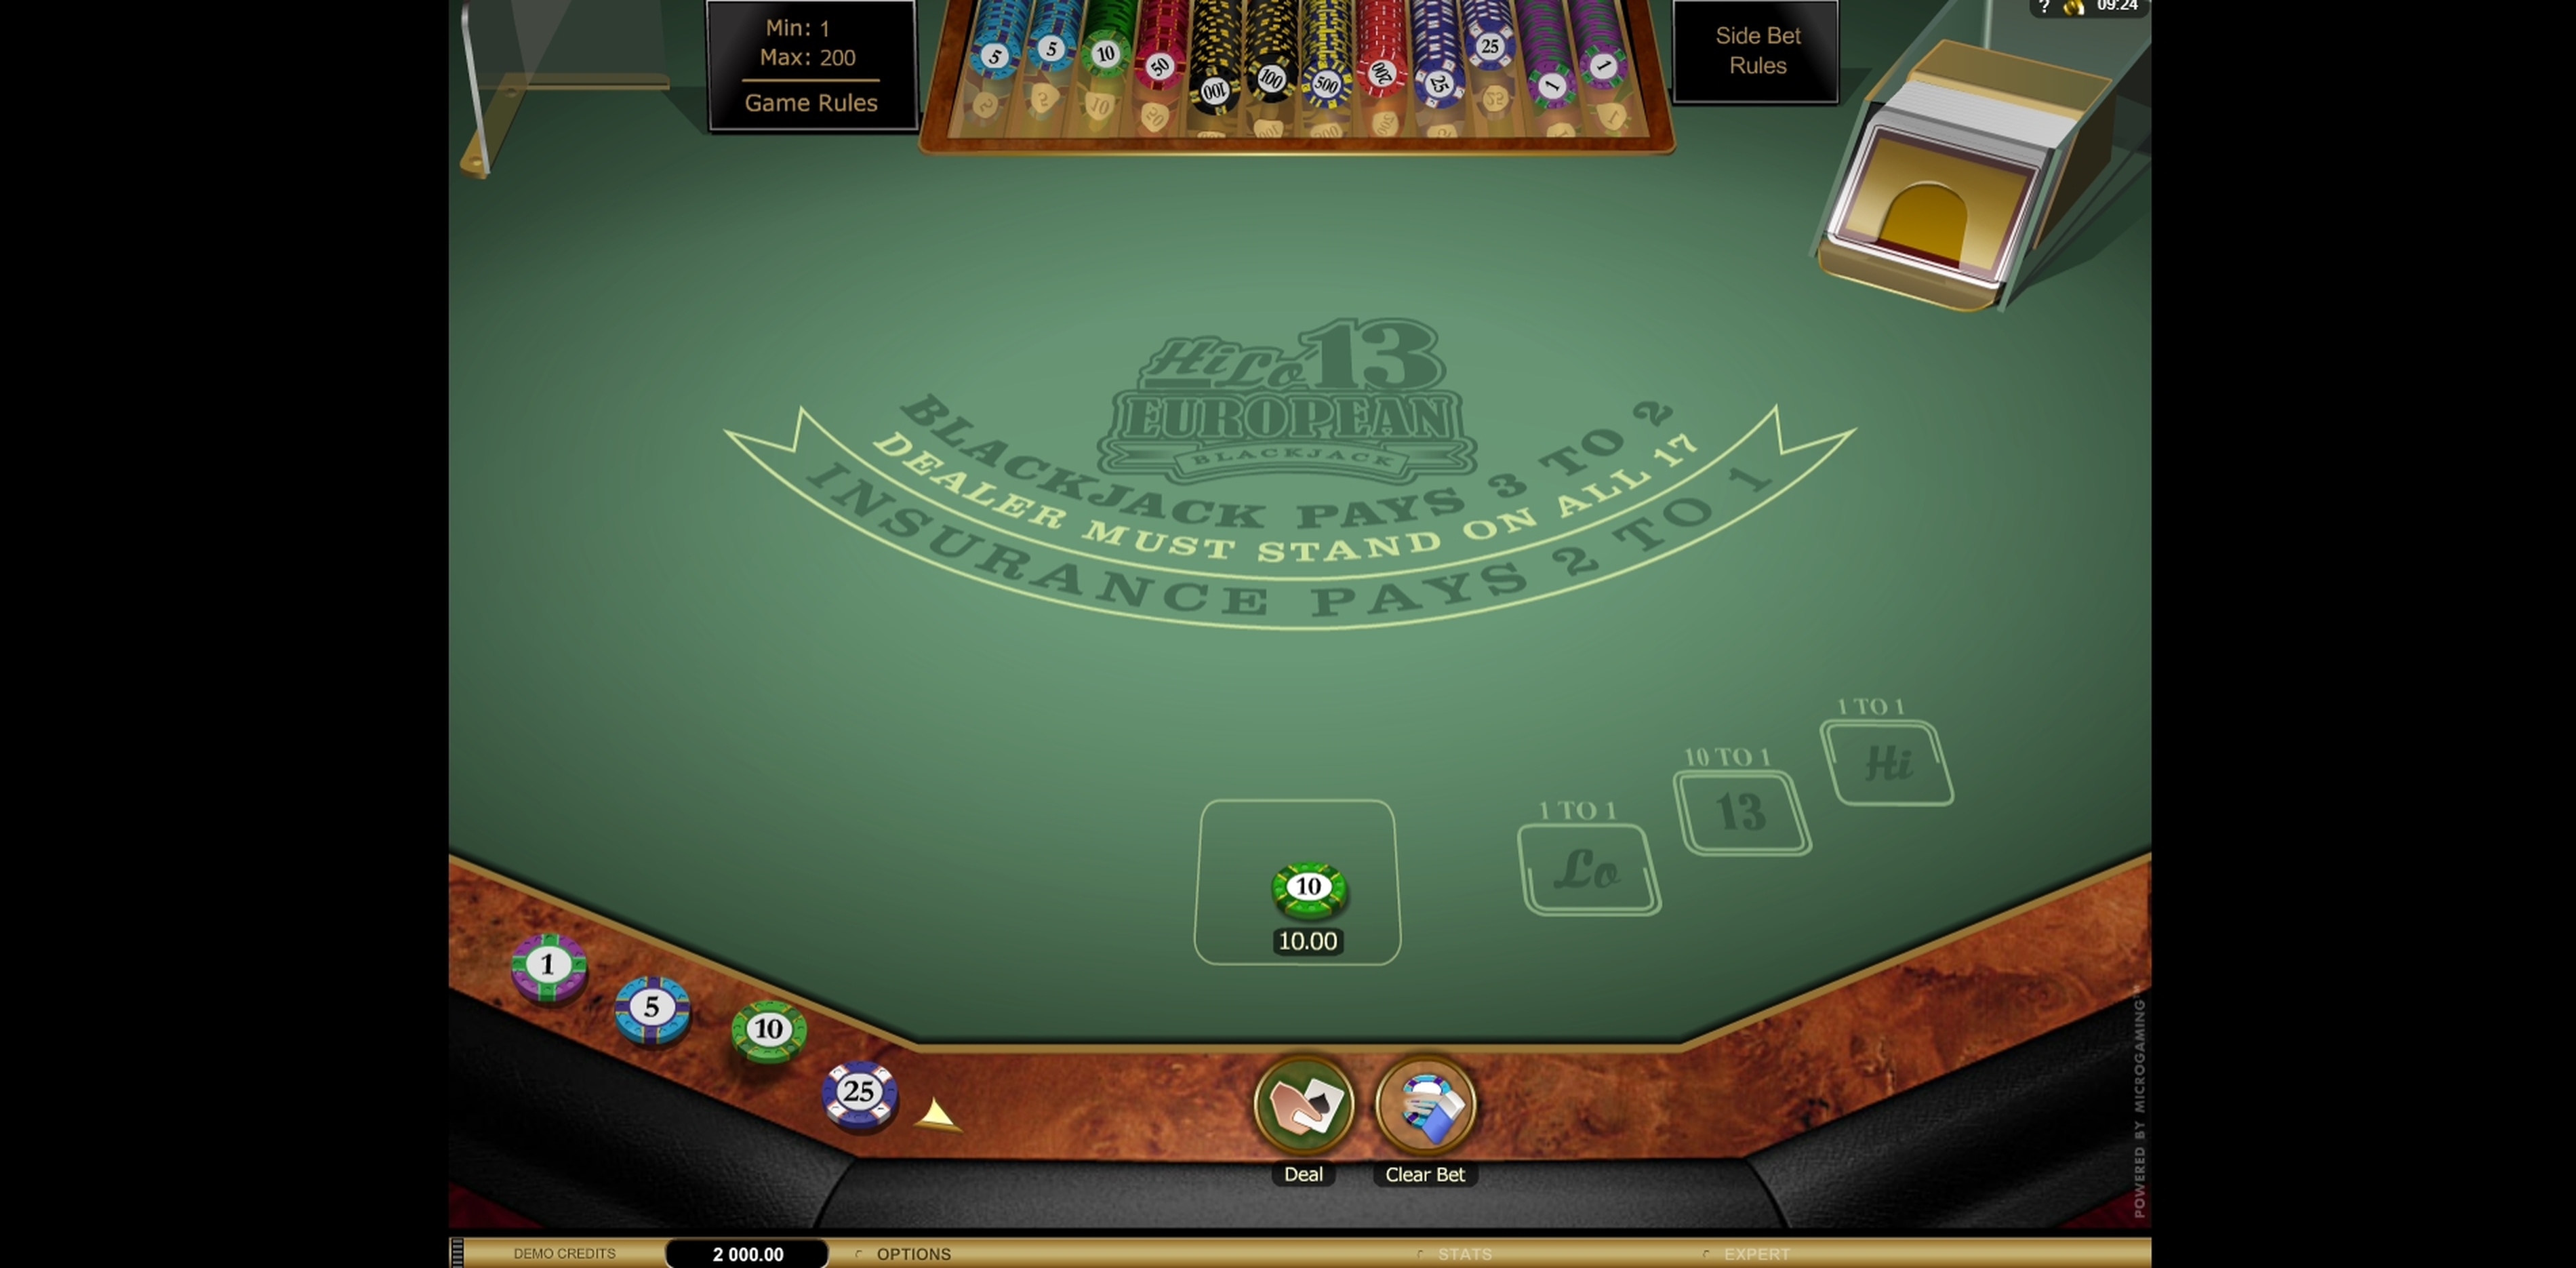 Reels in Hi Lo 13 European Blackjack Gold Slot Game by Microgaming